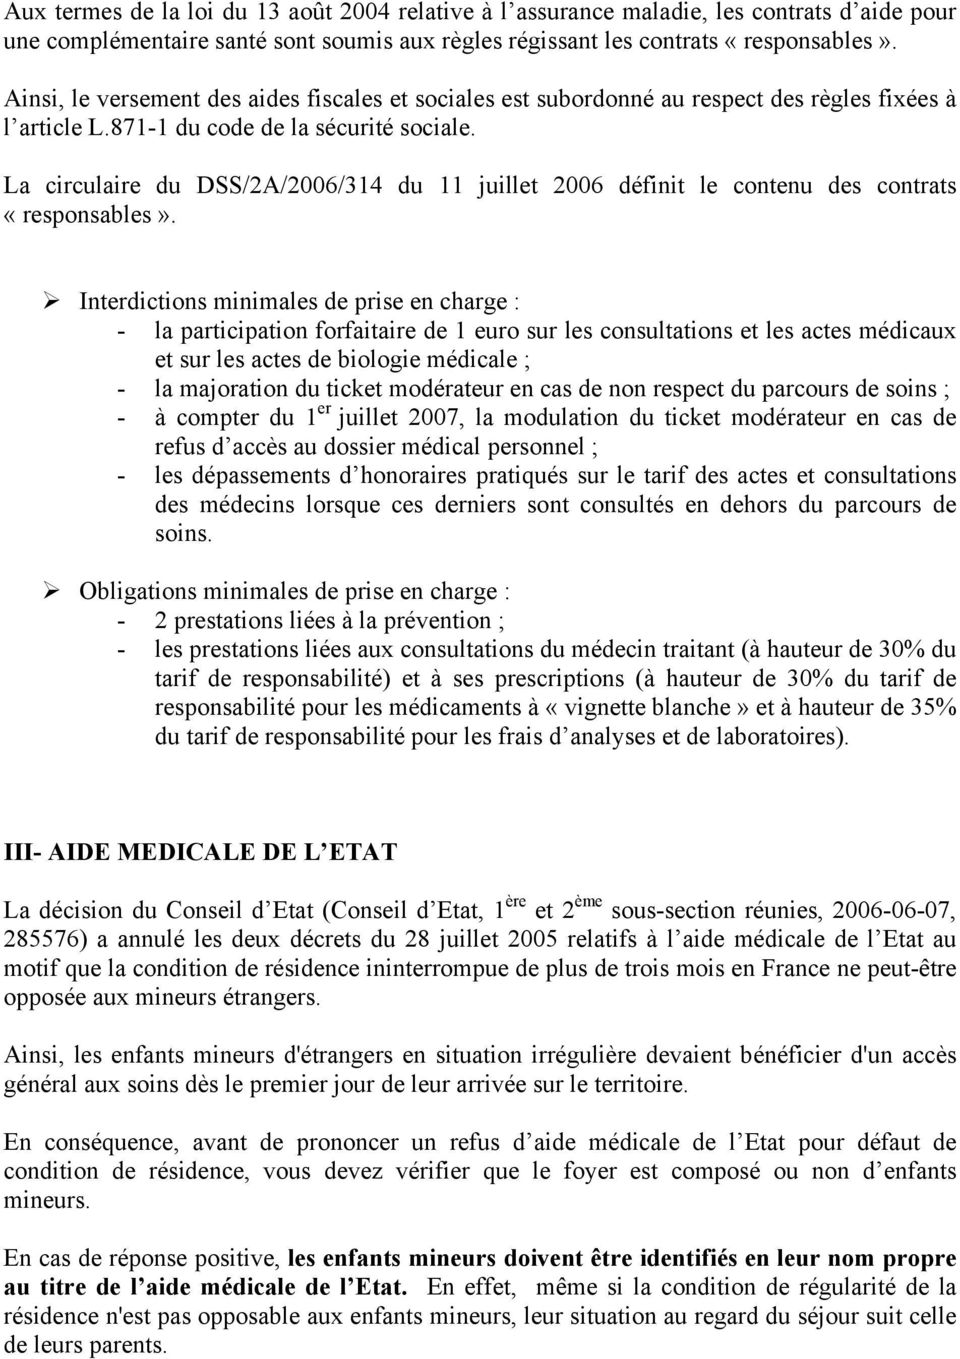 La circulaire du DSS/2A/2006/314 du 11 juillet 2006 définit le contenu des contrats «responsables».